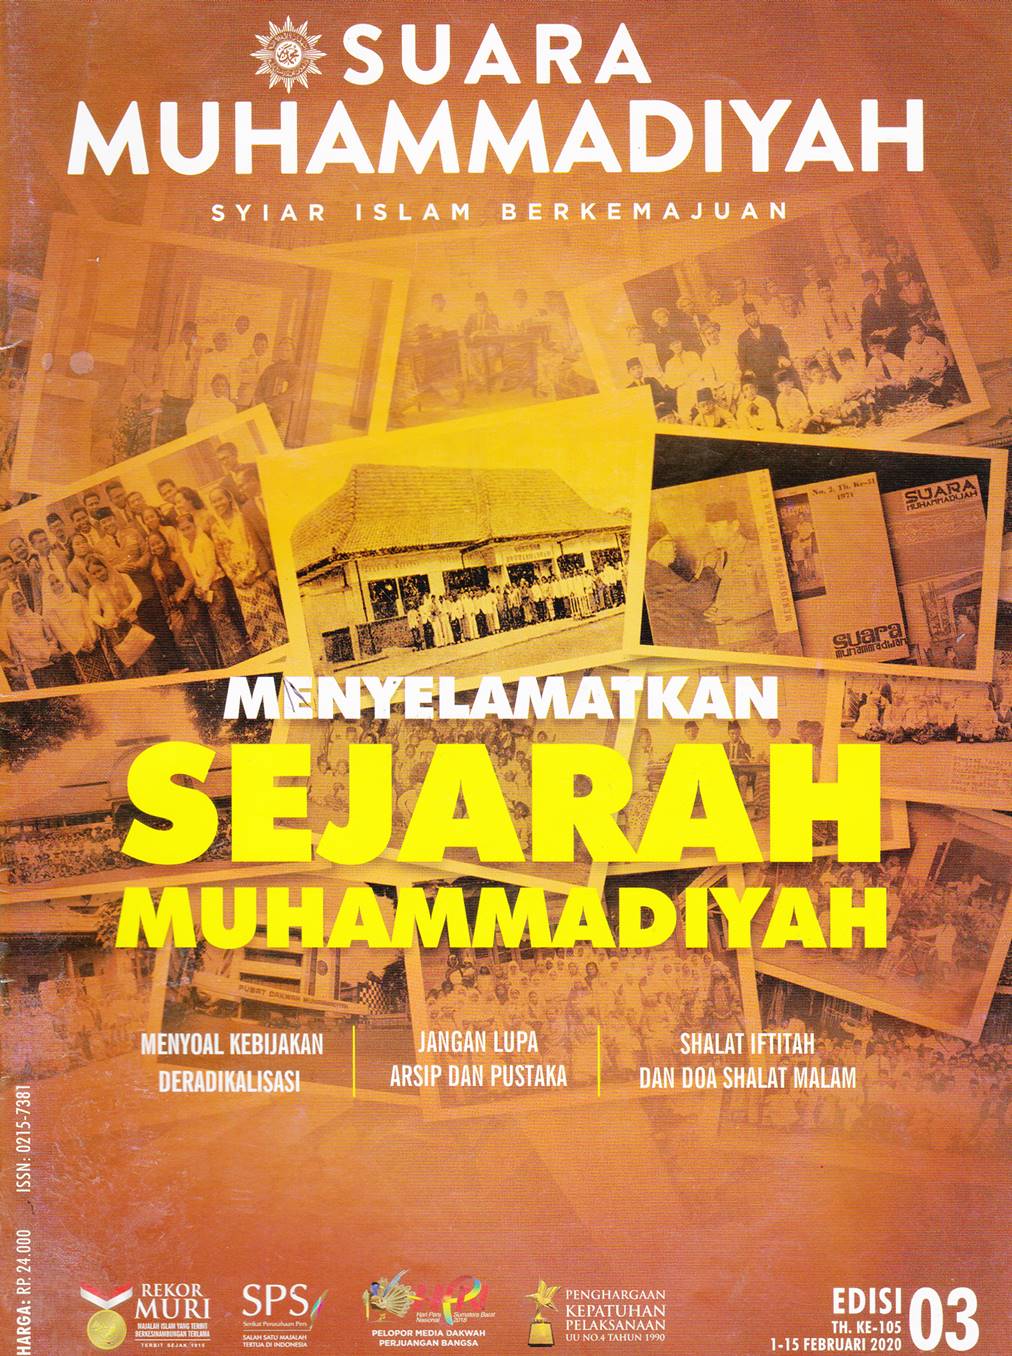 SUARA MUHAMMADIYAH : Syiar Islam Berkemajuan= Menyelamatkan Sejarah Muhammadiyah